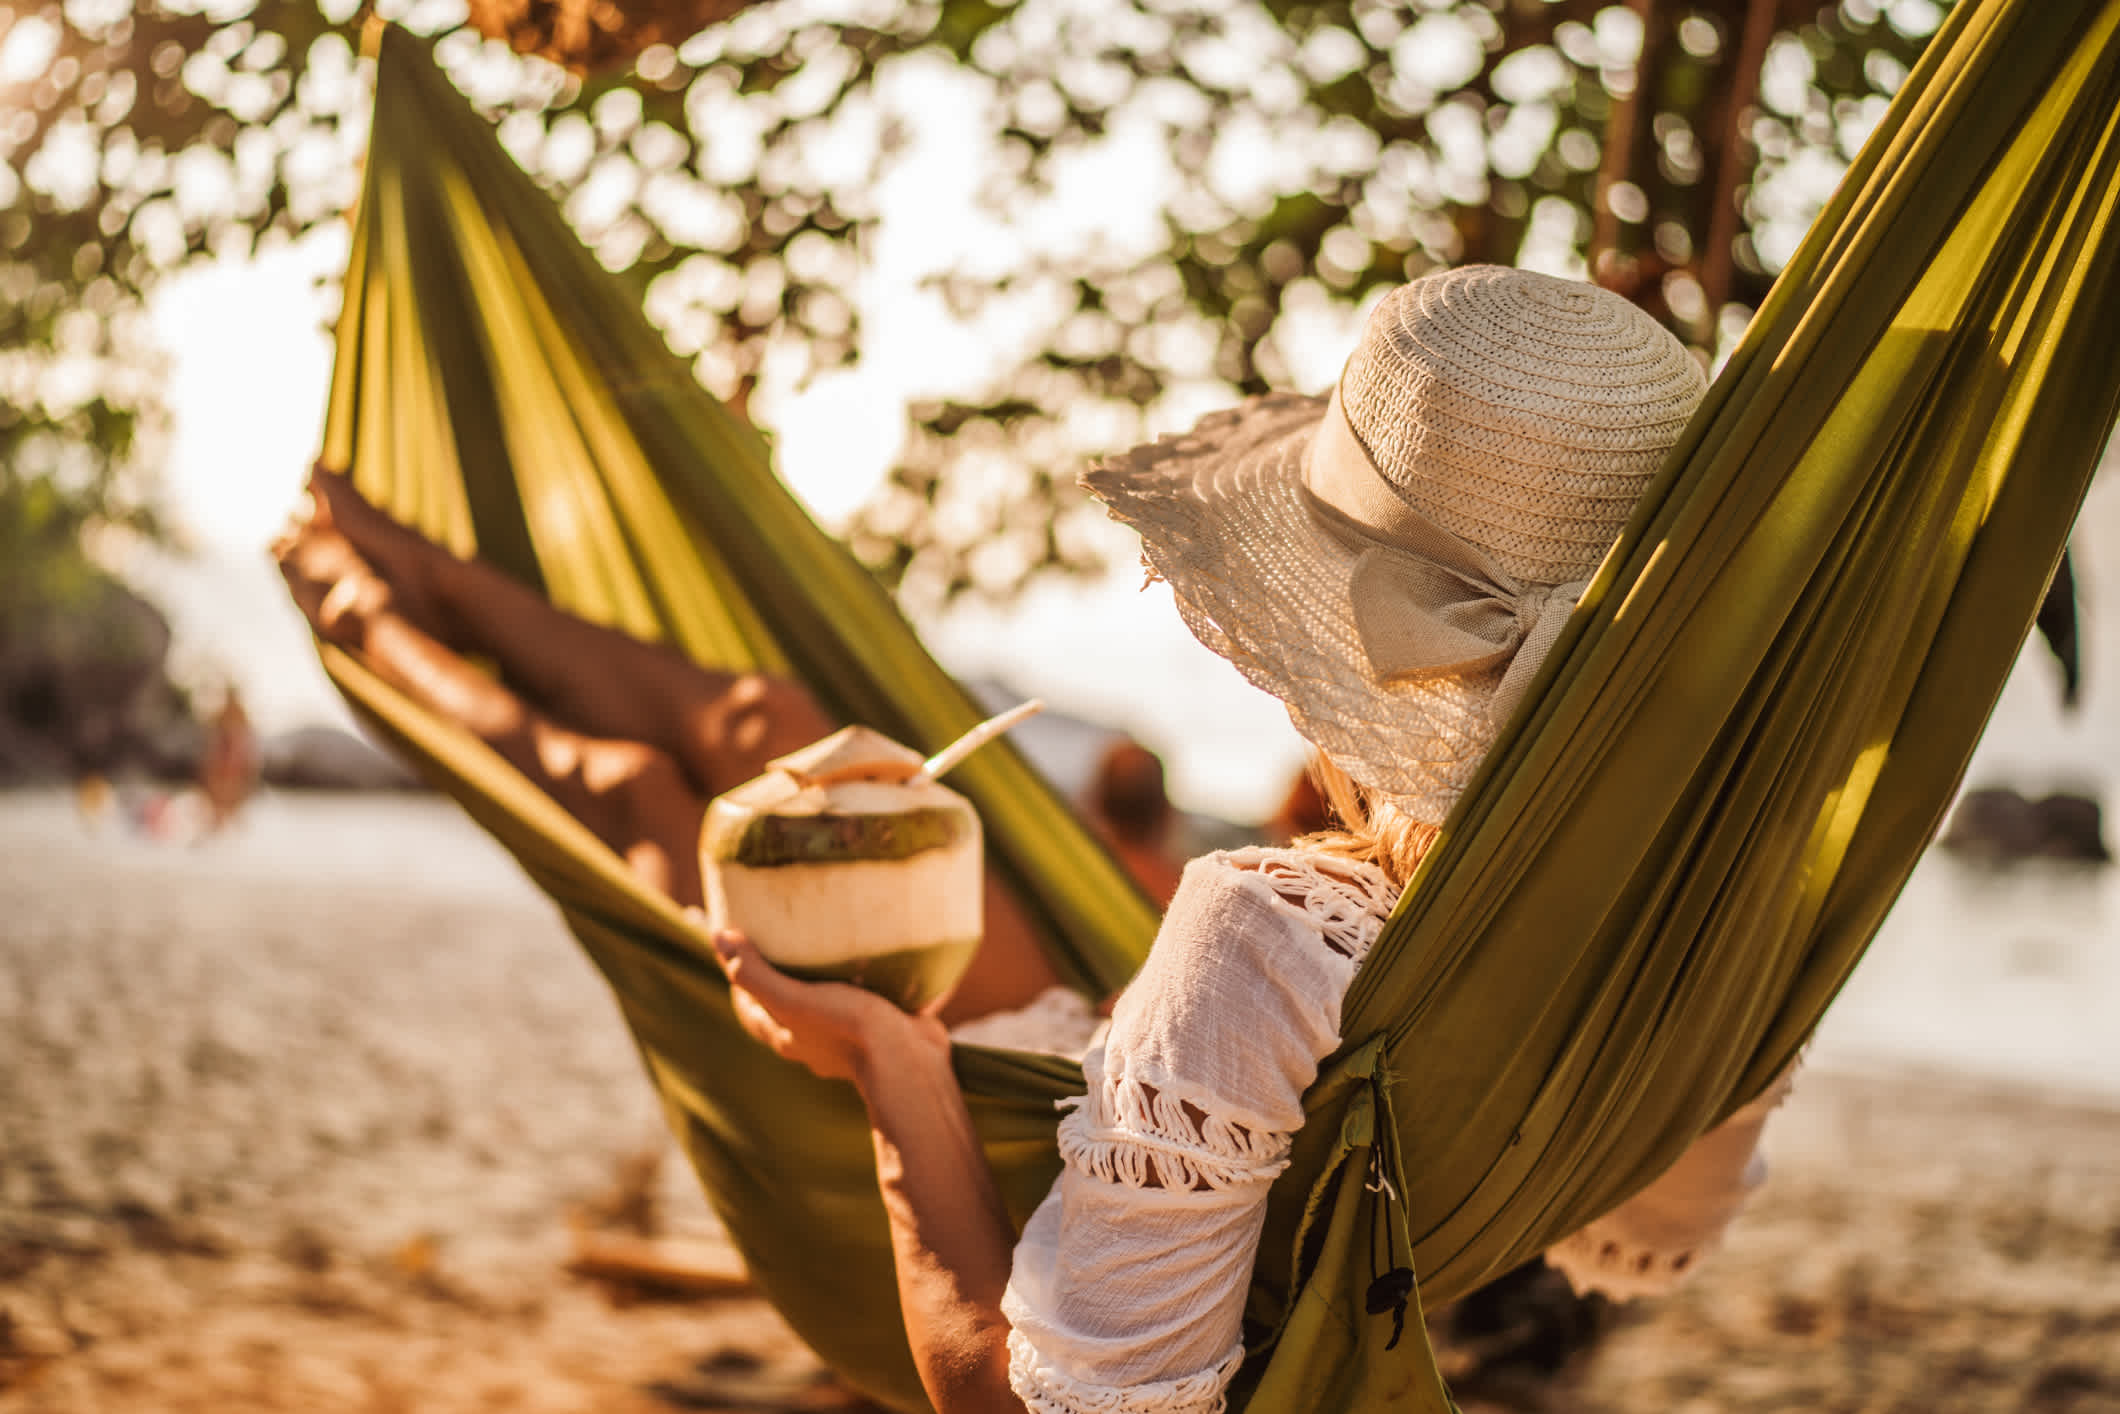 Die Frau mit Kokosnuss-Drink entspannt sich in der Hängematte am Strand.

